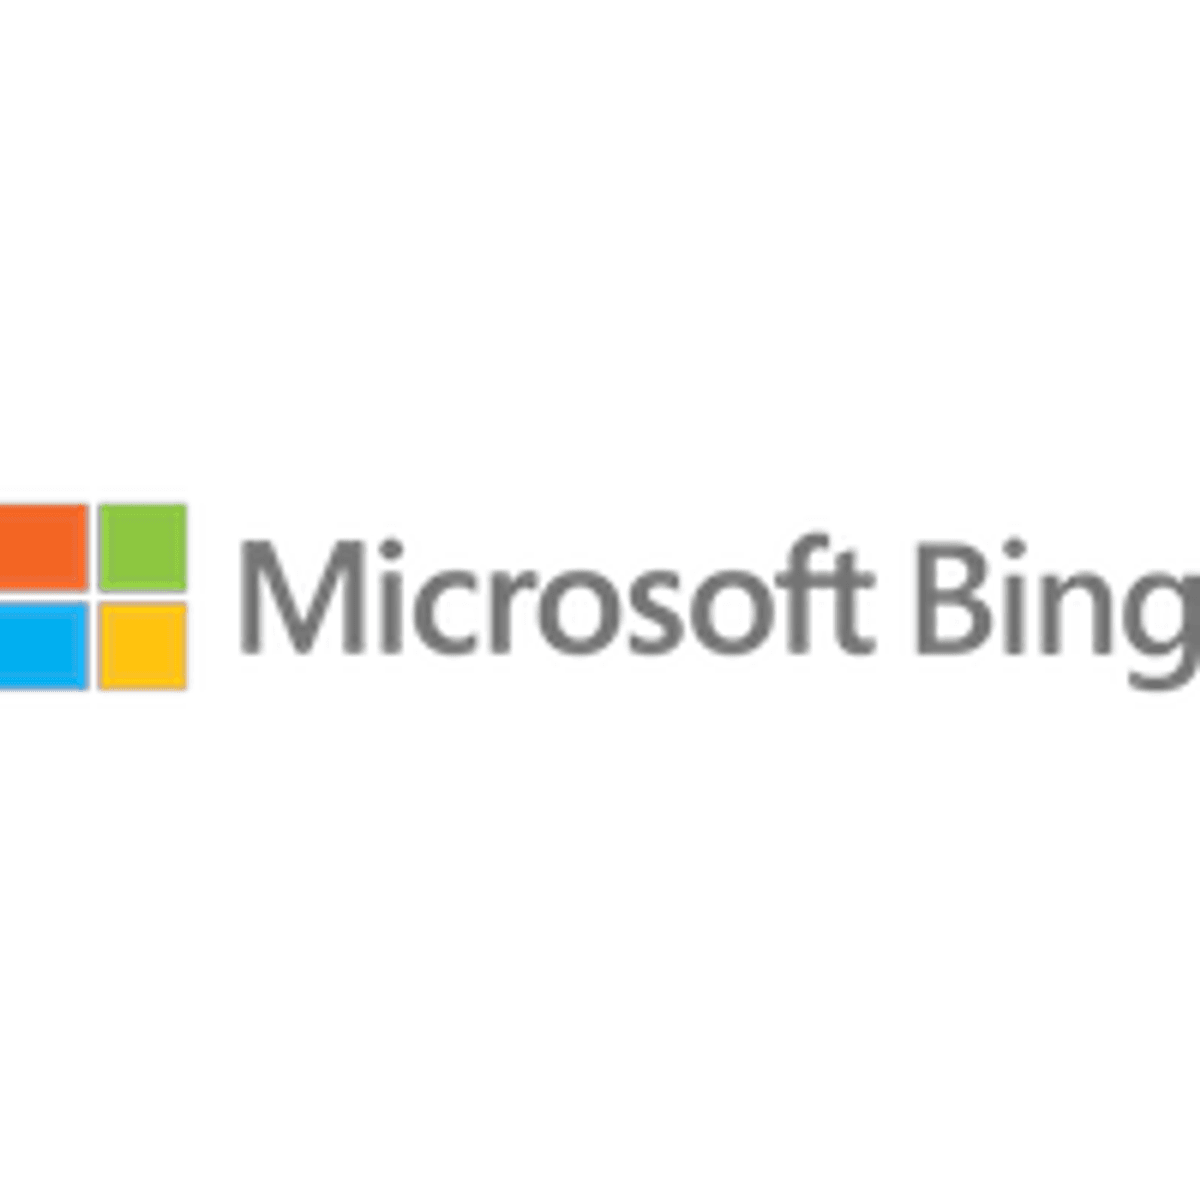 Zoekmachine Bing telt meer dan honderd miljoen gebruikers image